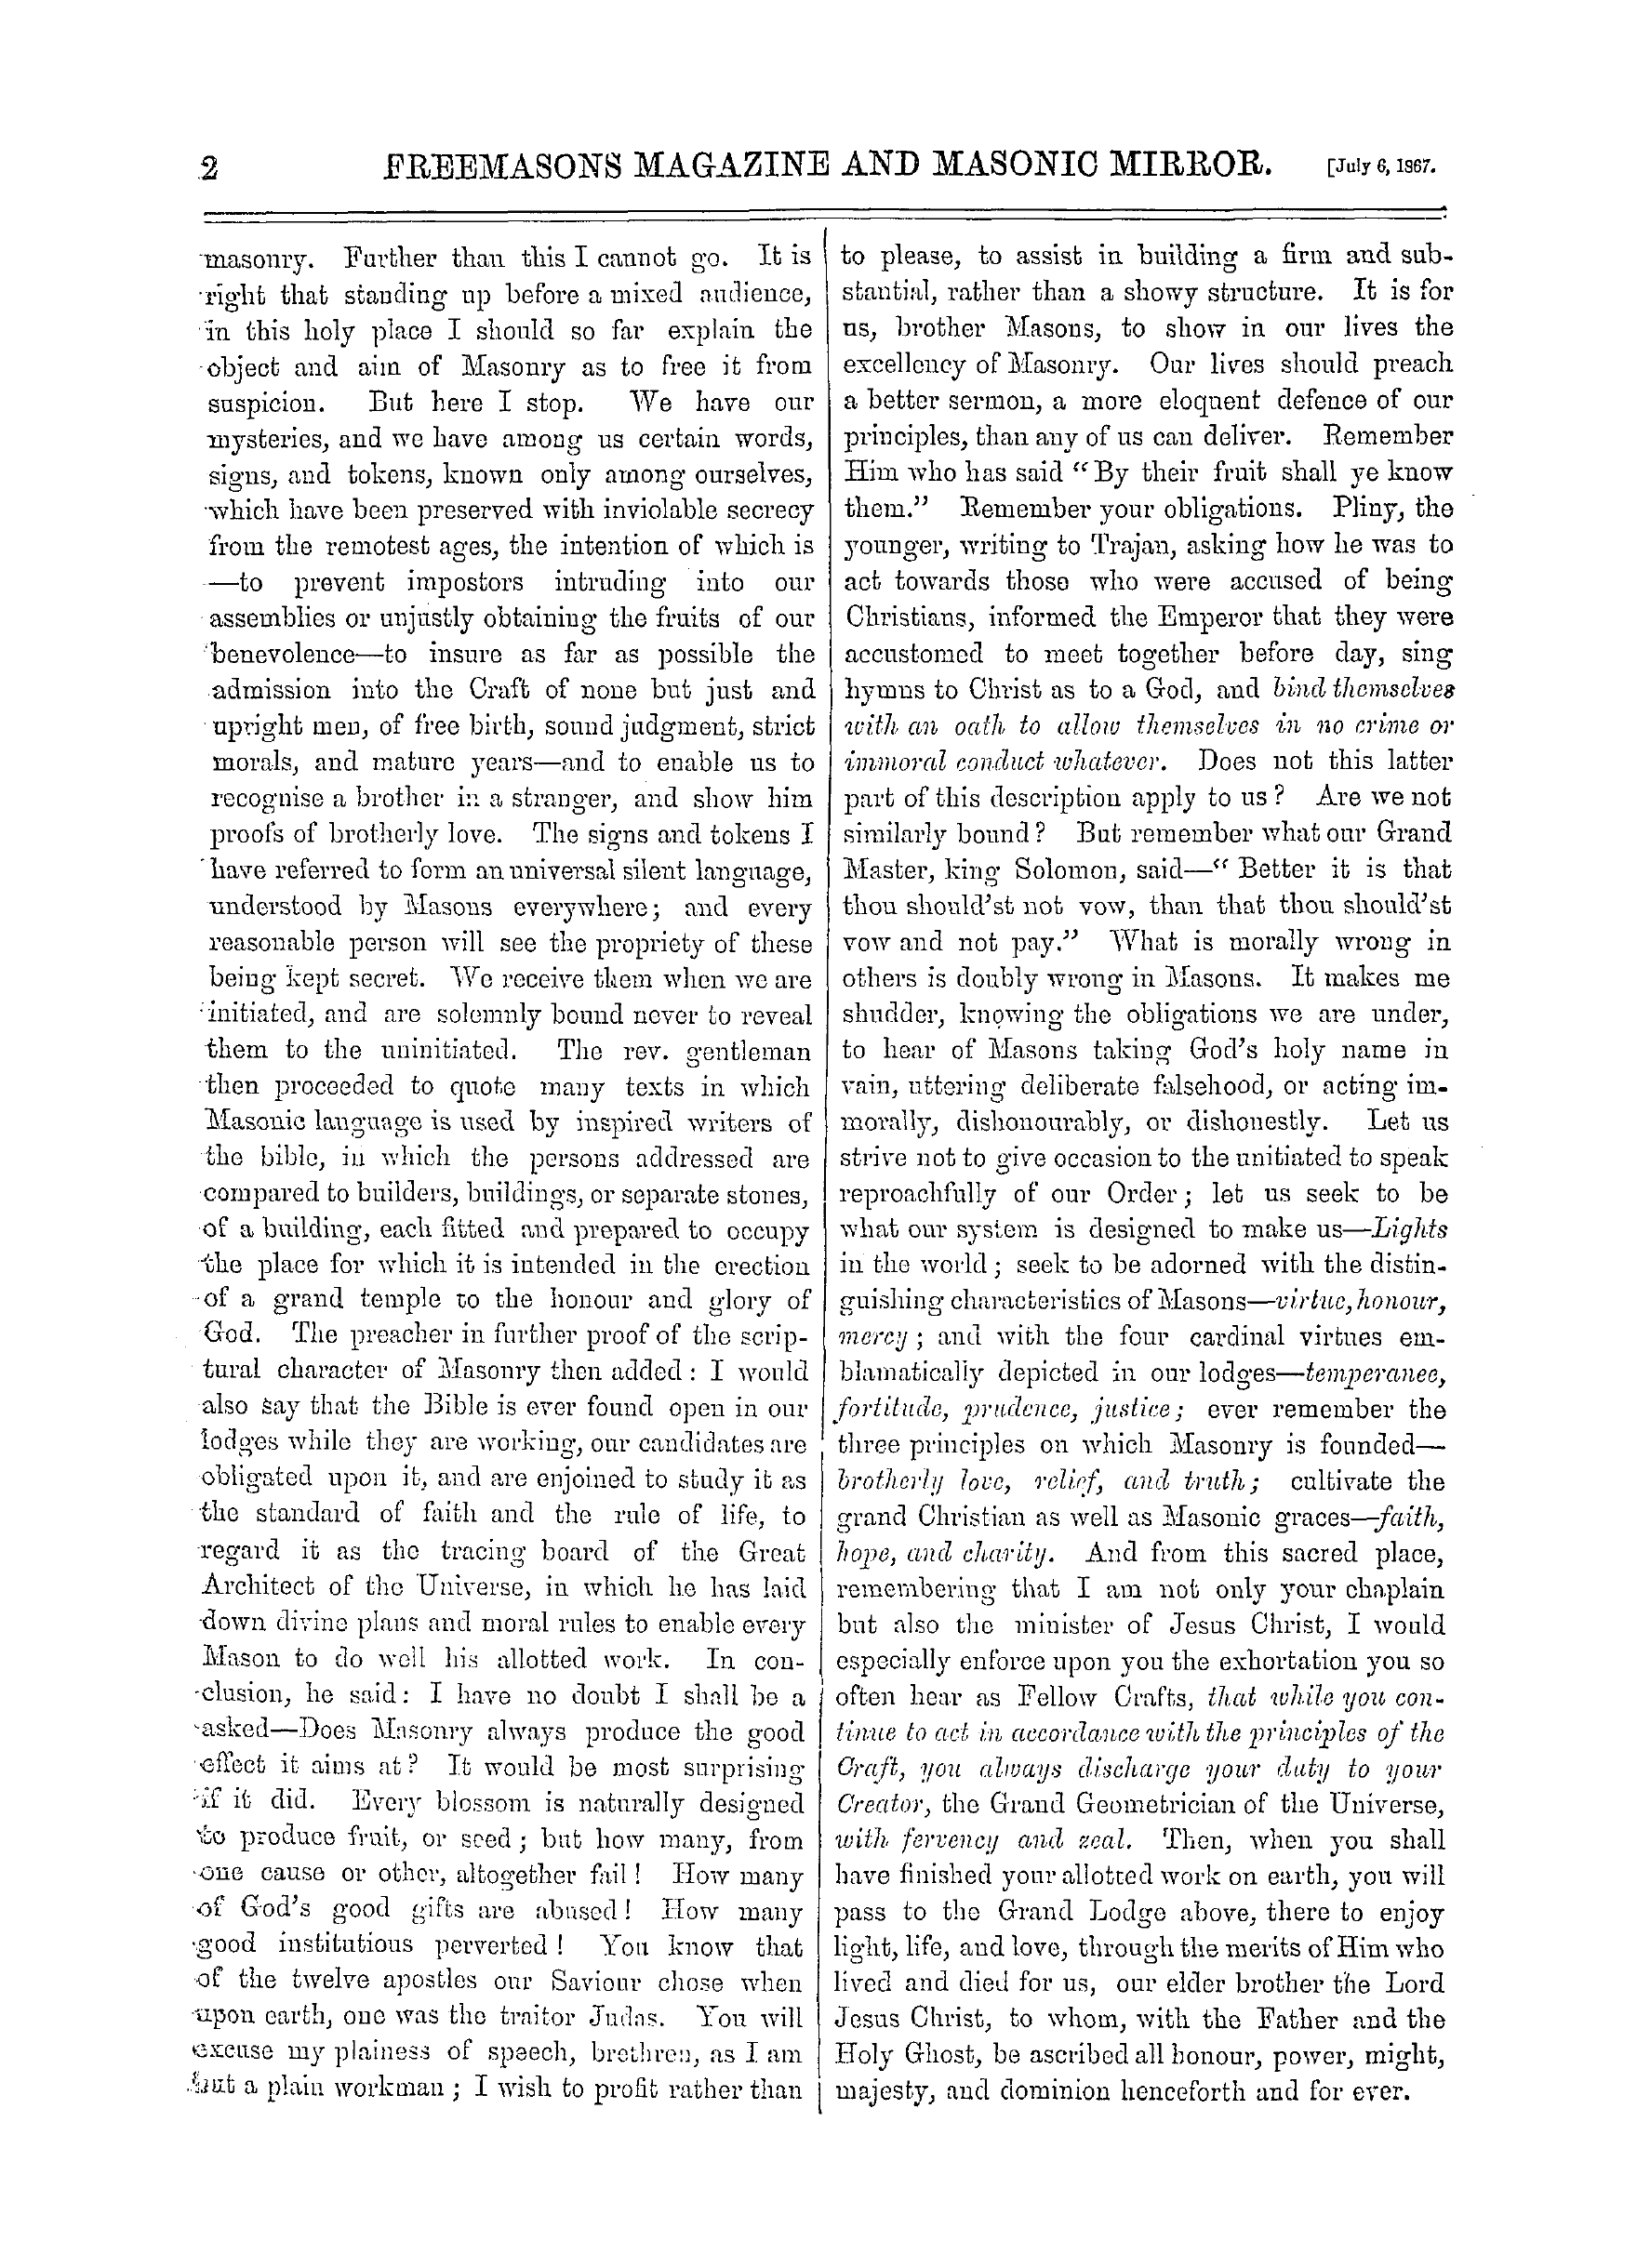 The Freemasons' Monthly Magazine: 1867-07-06: 10